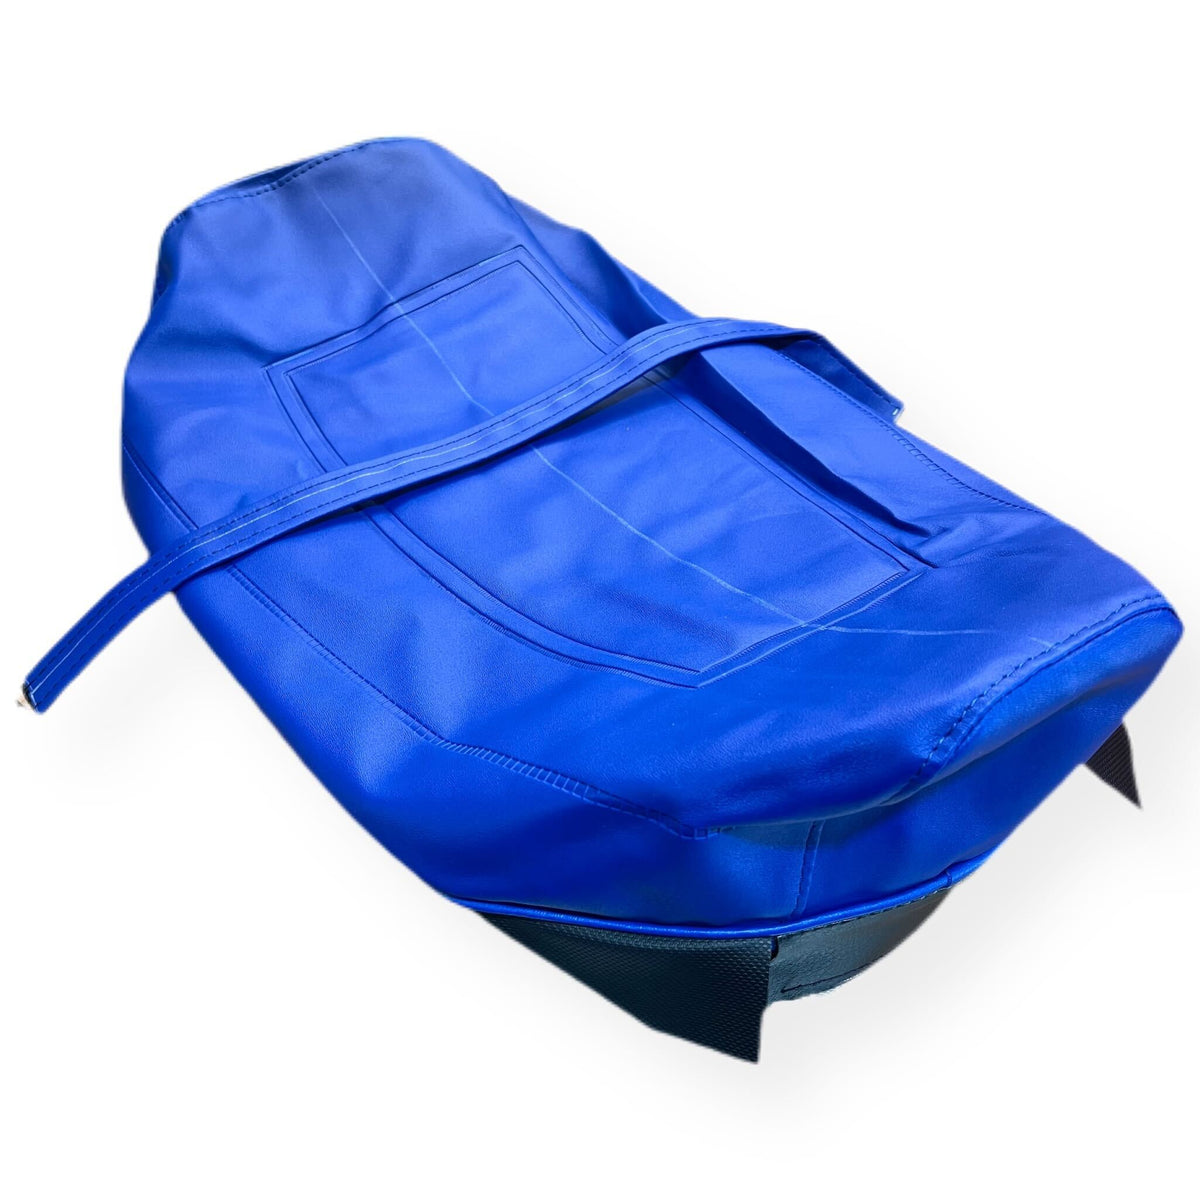 Vespa PX PE T5 Classic Seat Cover - Union Jack Blue